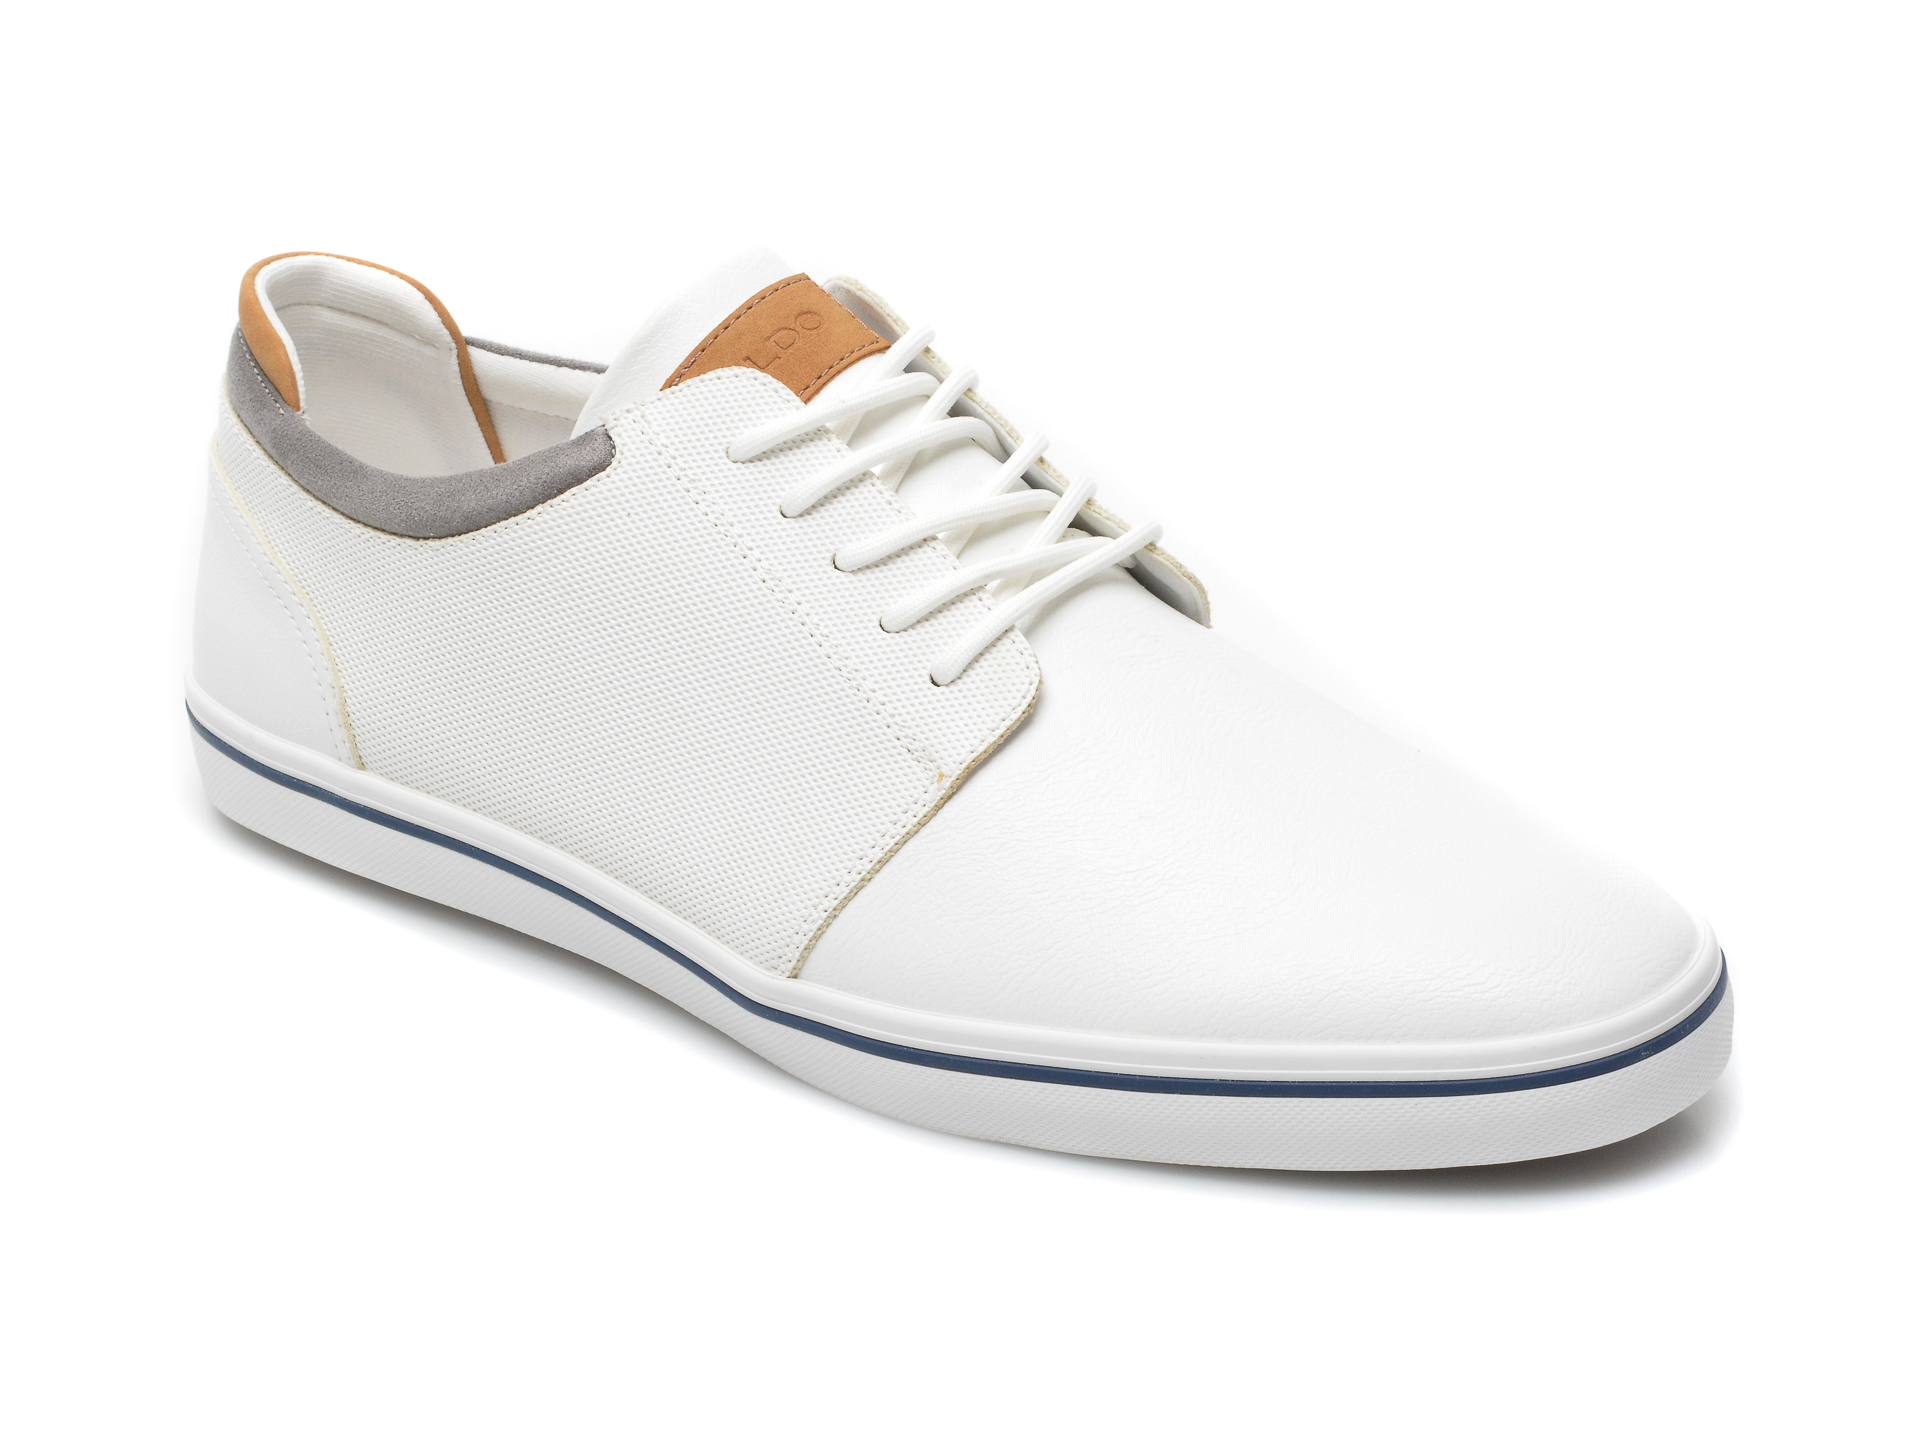 Pantofi sport ALDO albi, Dwain110, din piele ecologica Aldo